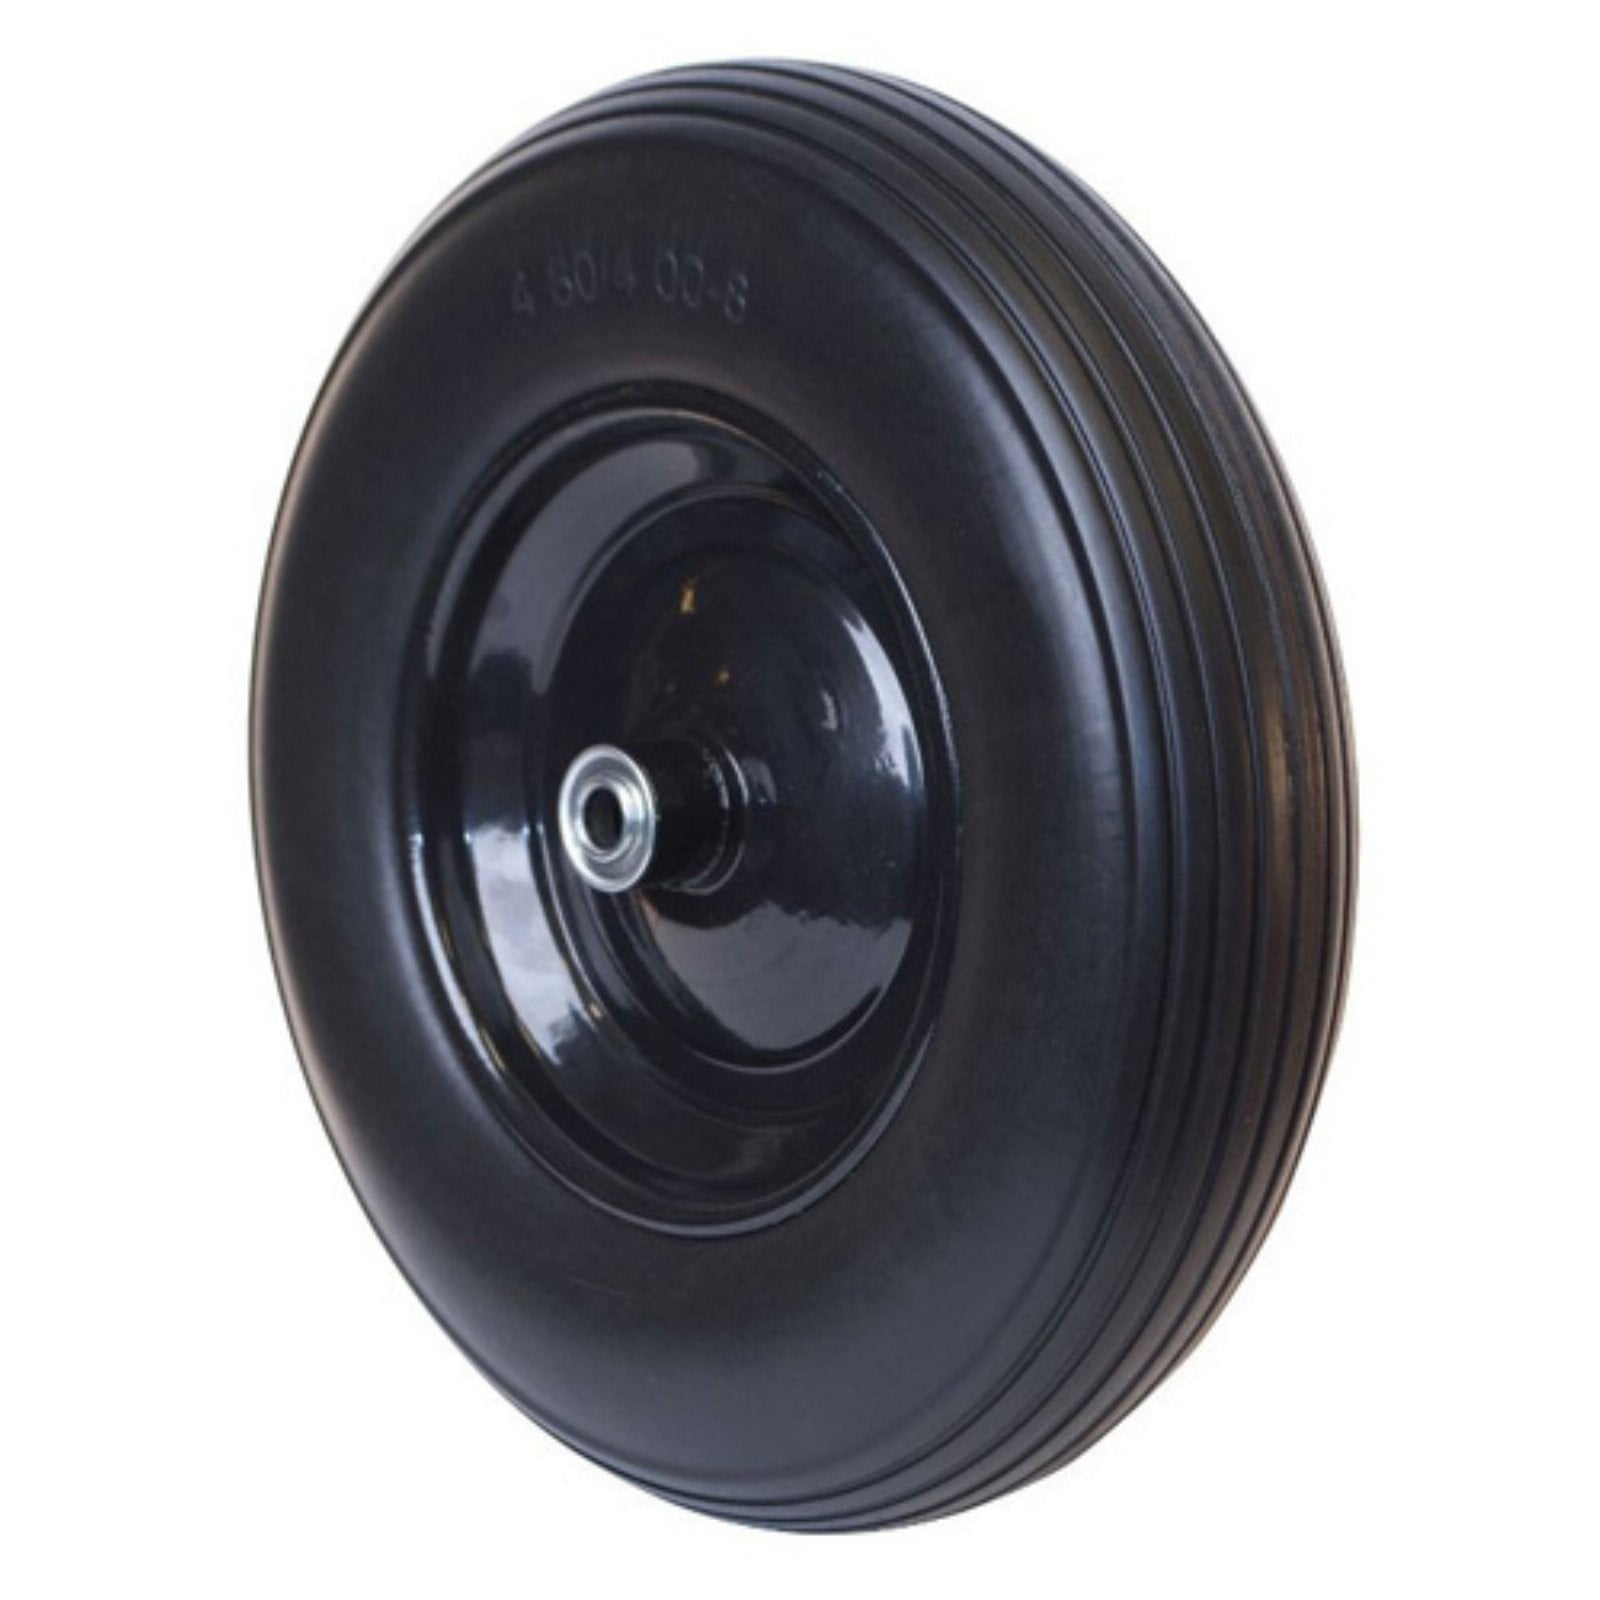 Details about   Brand New 16" Flat Free Wheel Barrow Wheelbarrow Tire Solid Foam 5/8 Axle Cart 